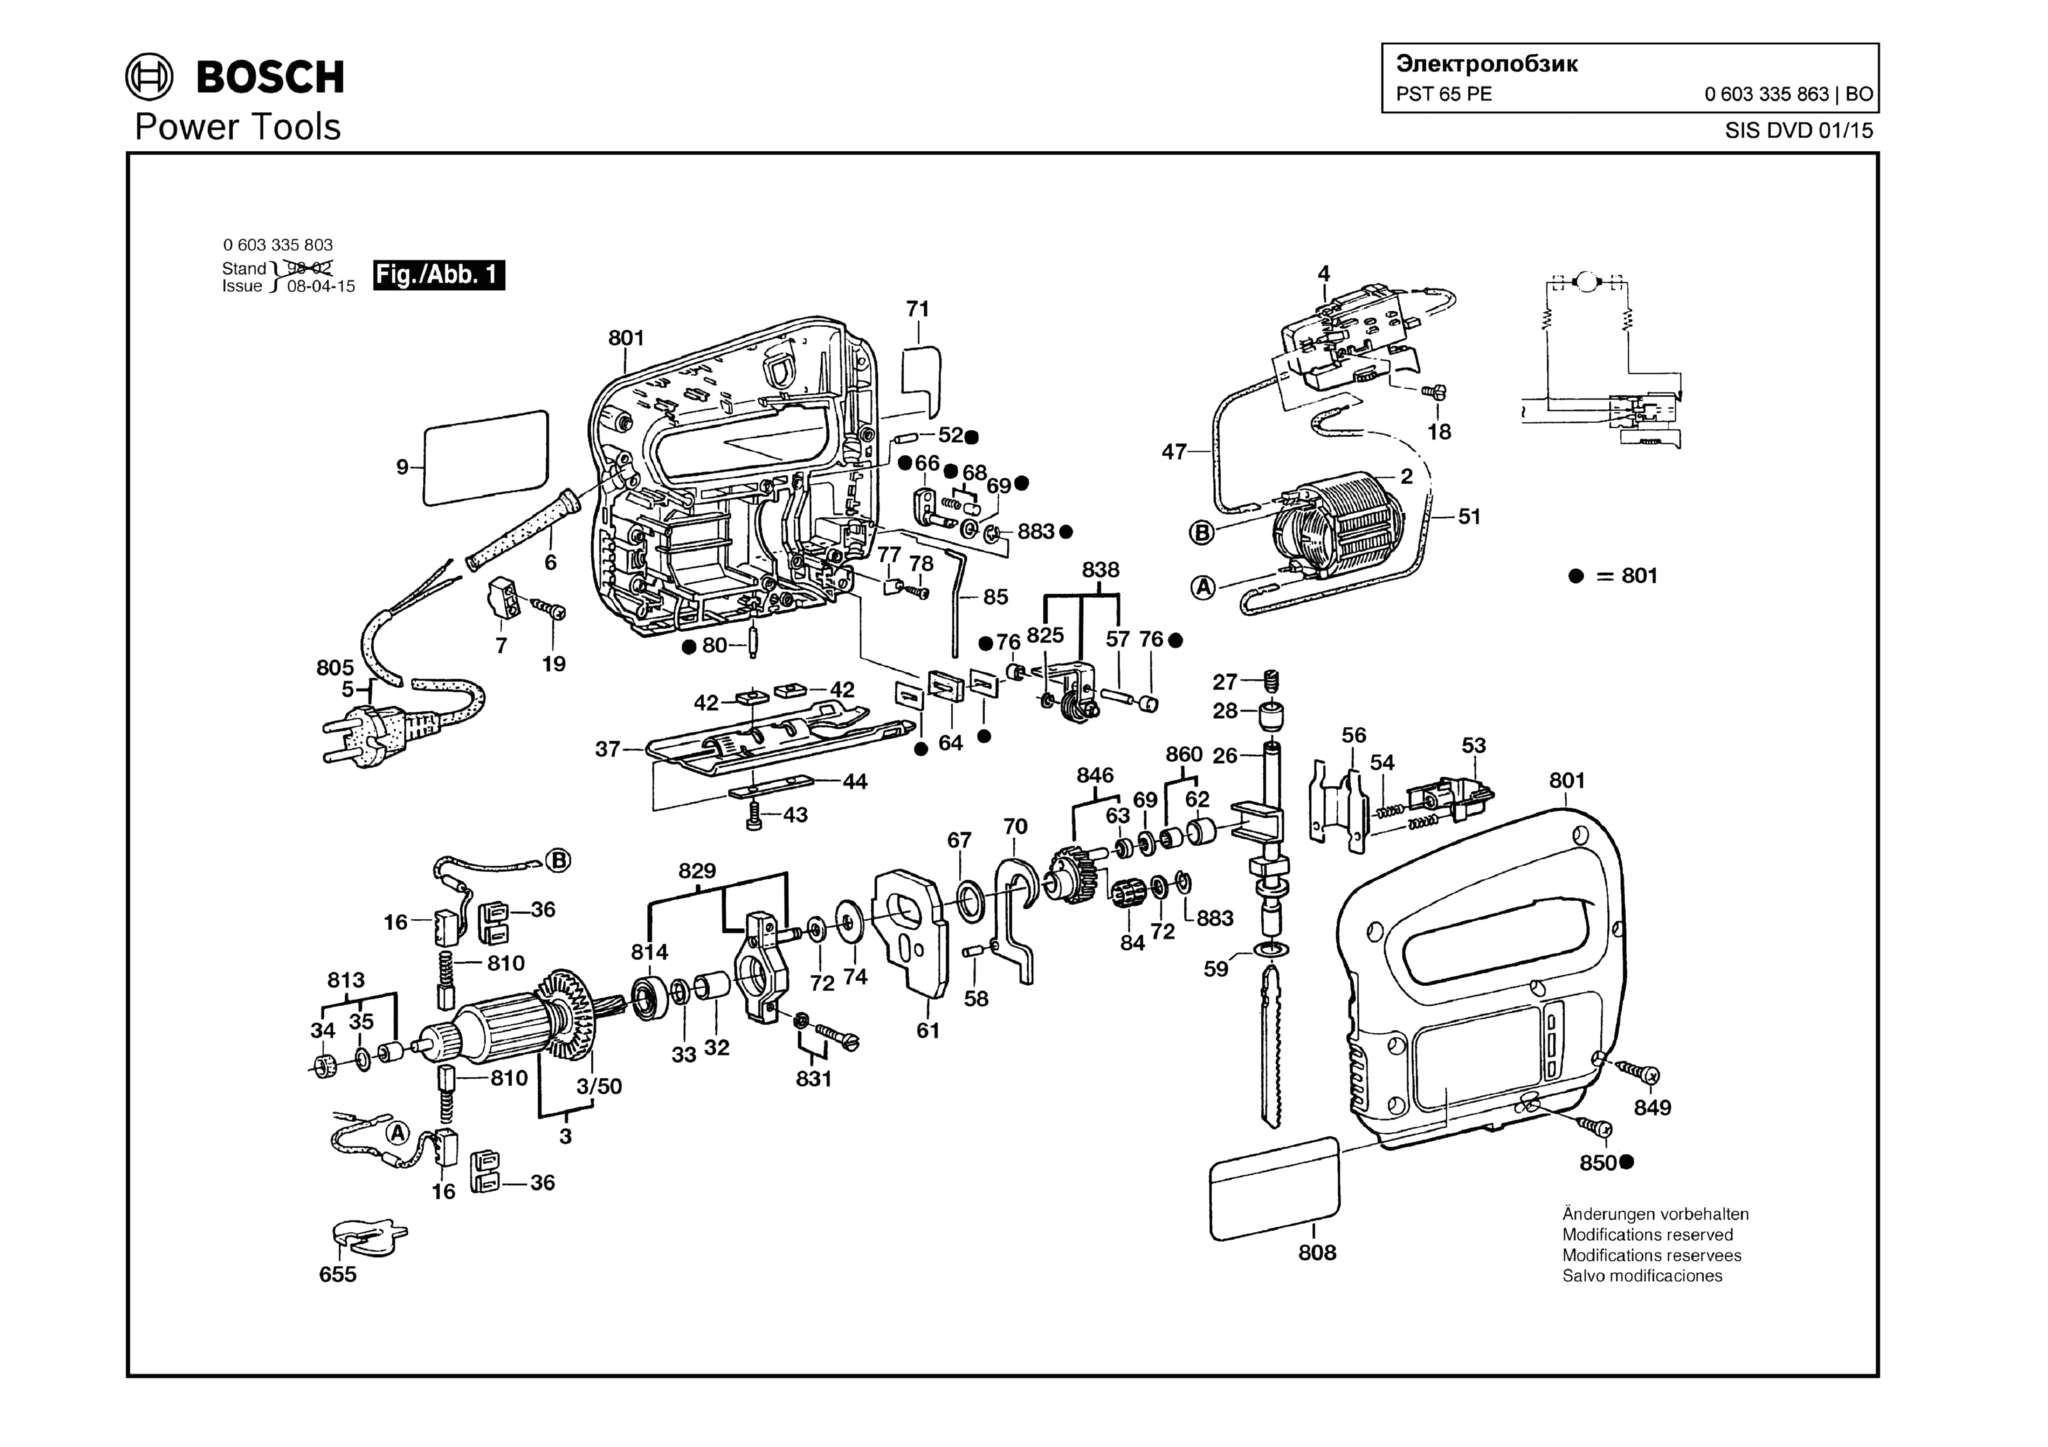 Запчасти, схема и деталировка Bosch PST 65 PE (ТИП 0603335863)